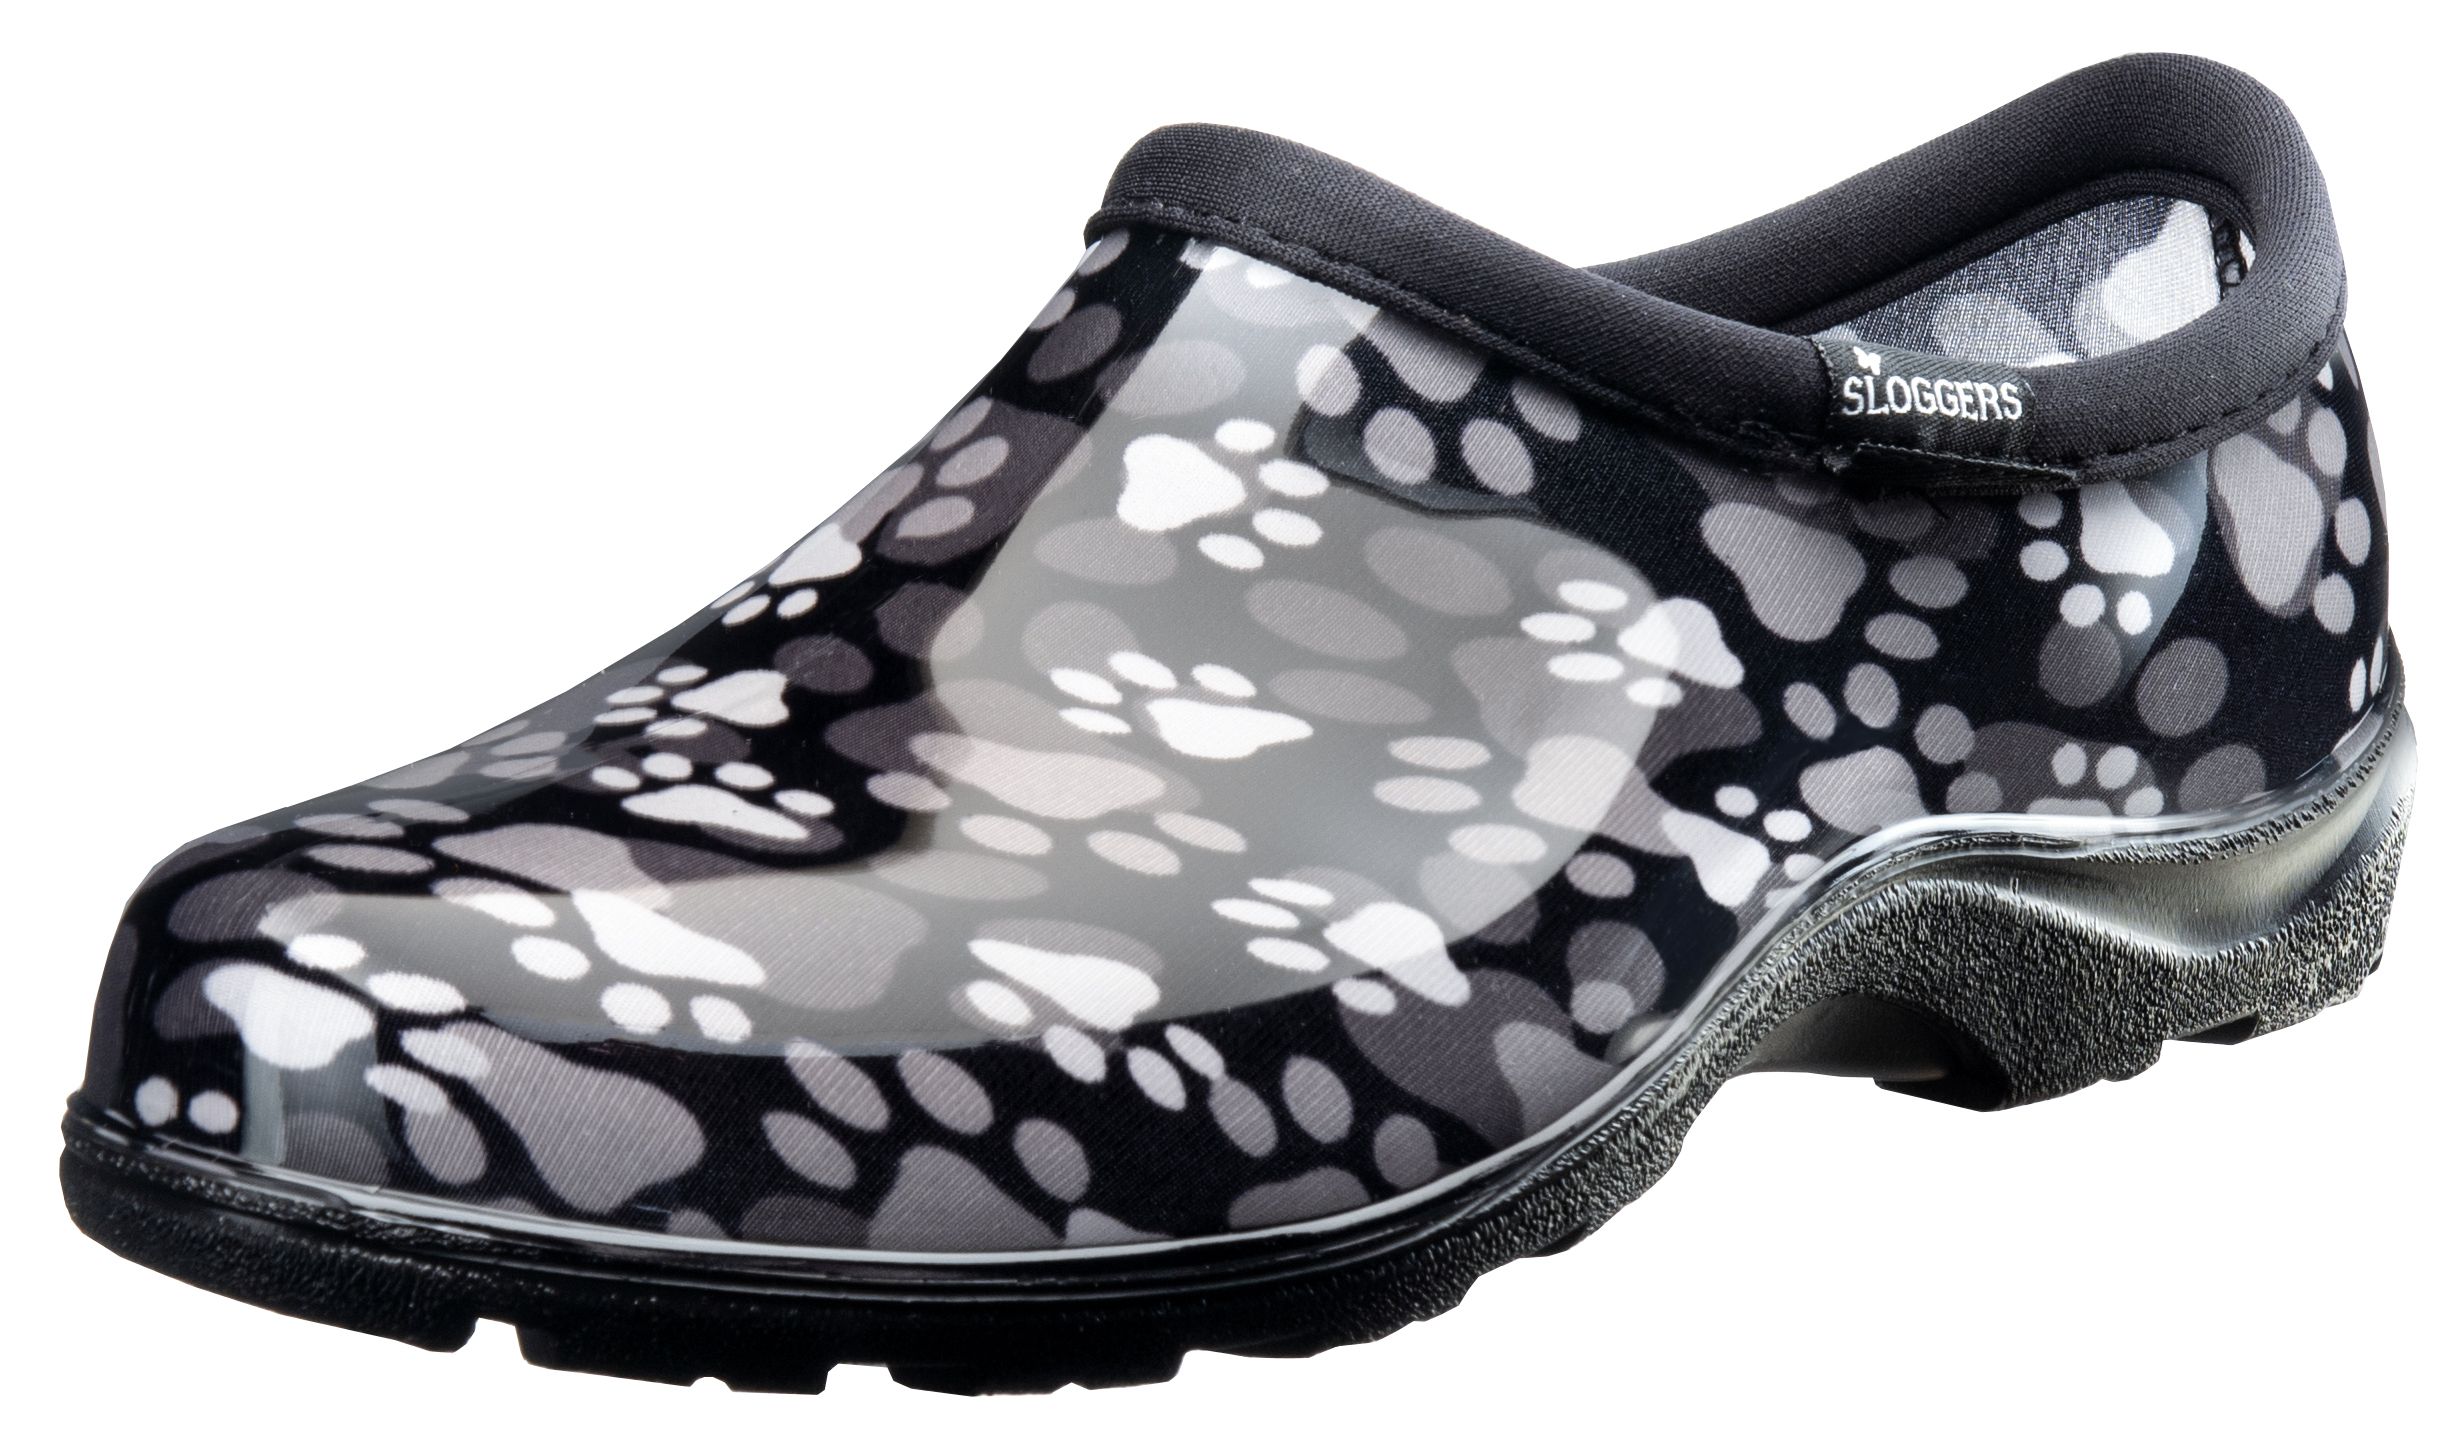 Sloggers Waterproof Garden Shoe for Women – Outdoor Slip On Rain and ...